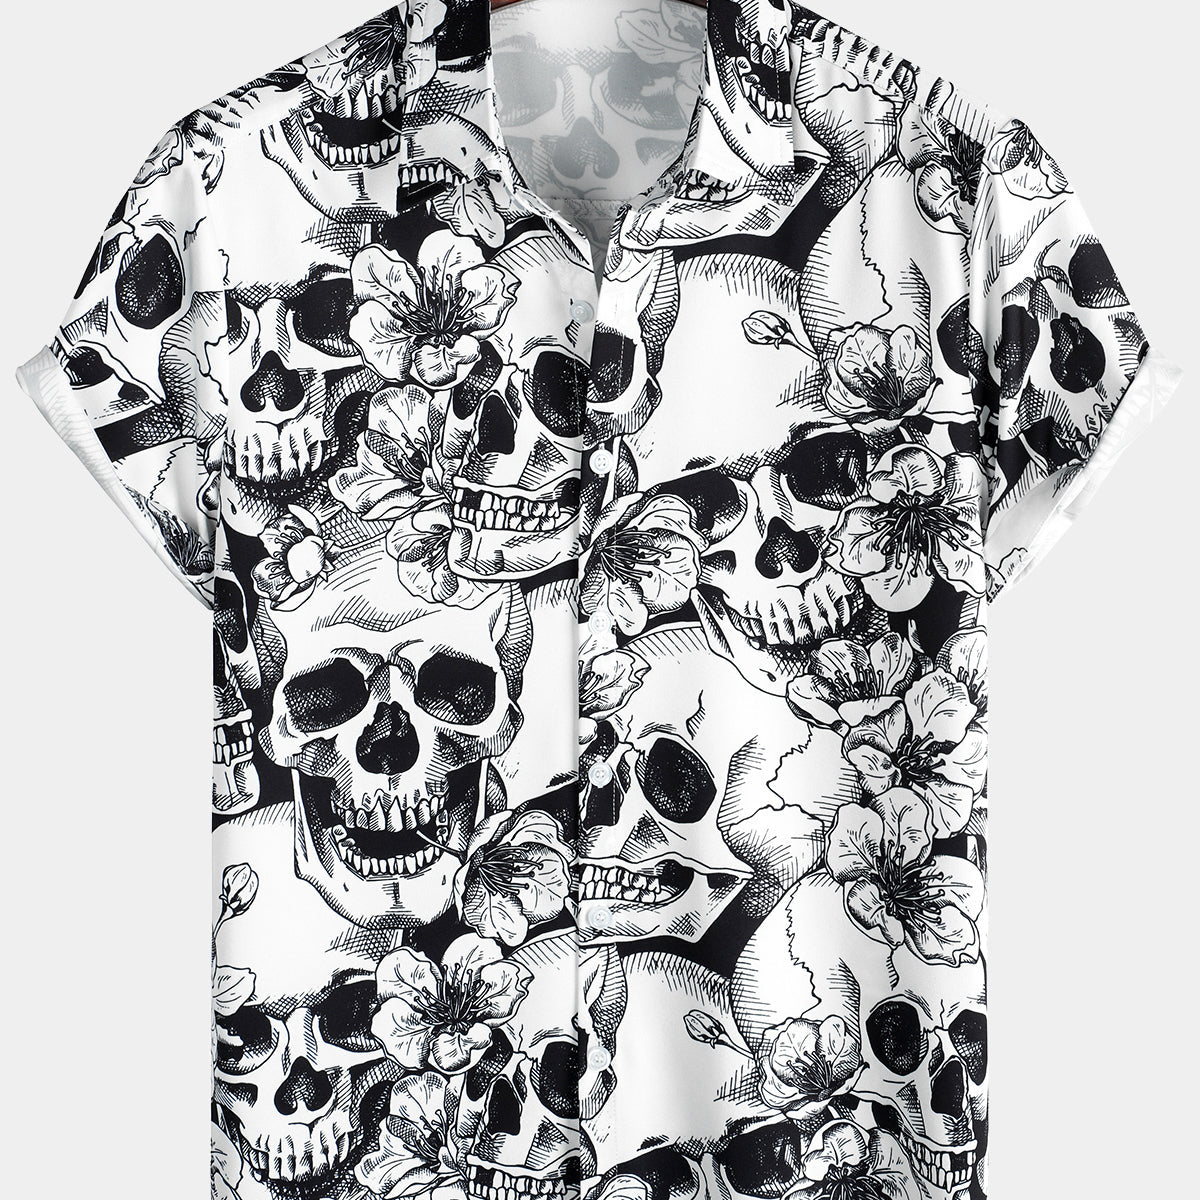 Men's Skull Punk Rocker Cool Rock Button Up Rockabilly Style Short Sleeve Hawaiian Shirt